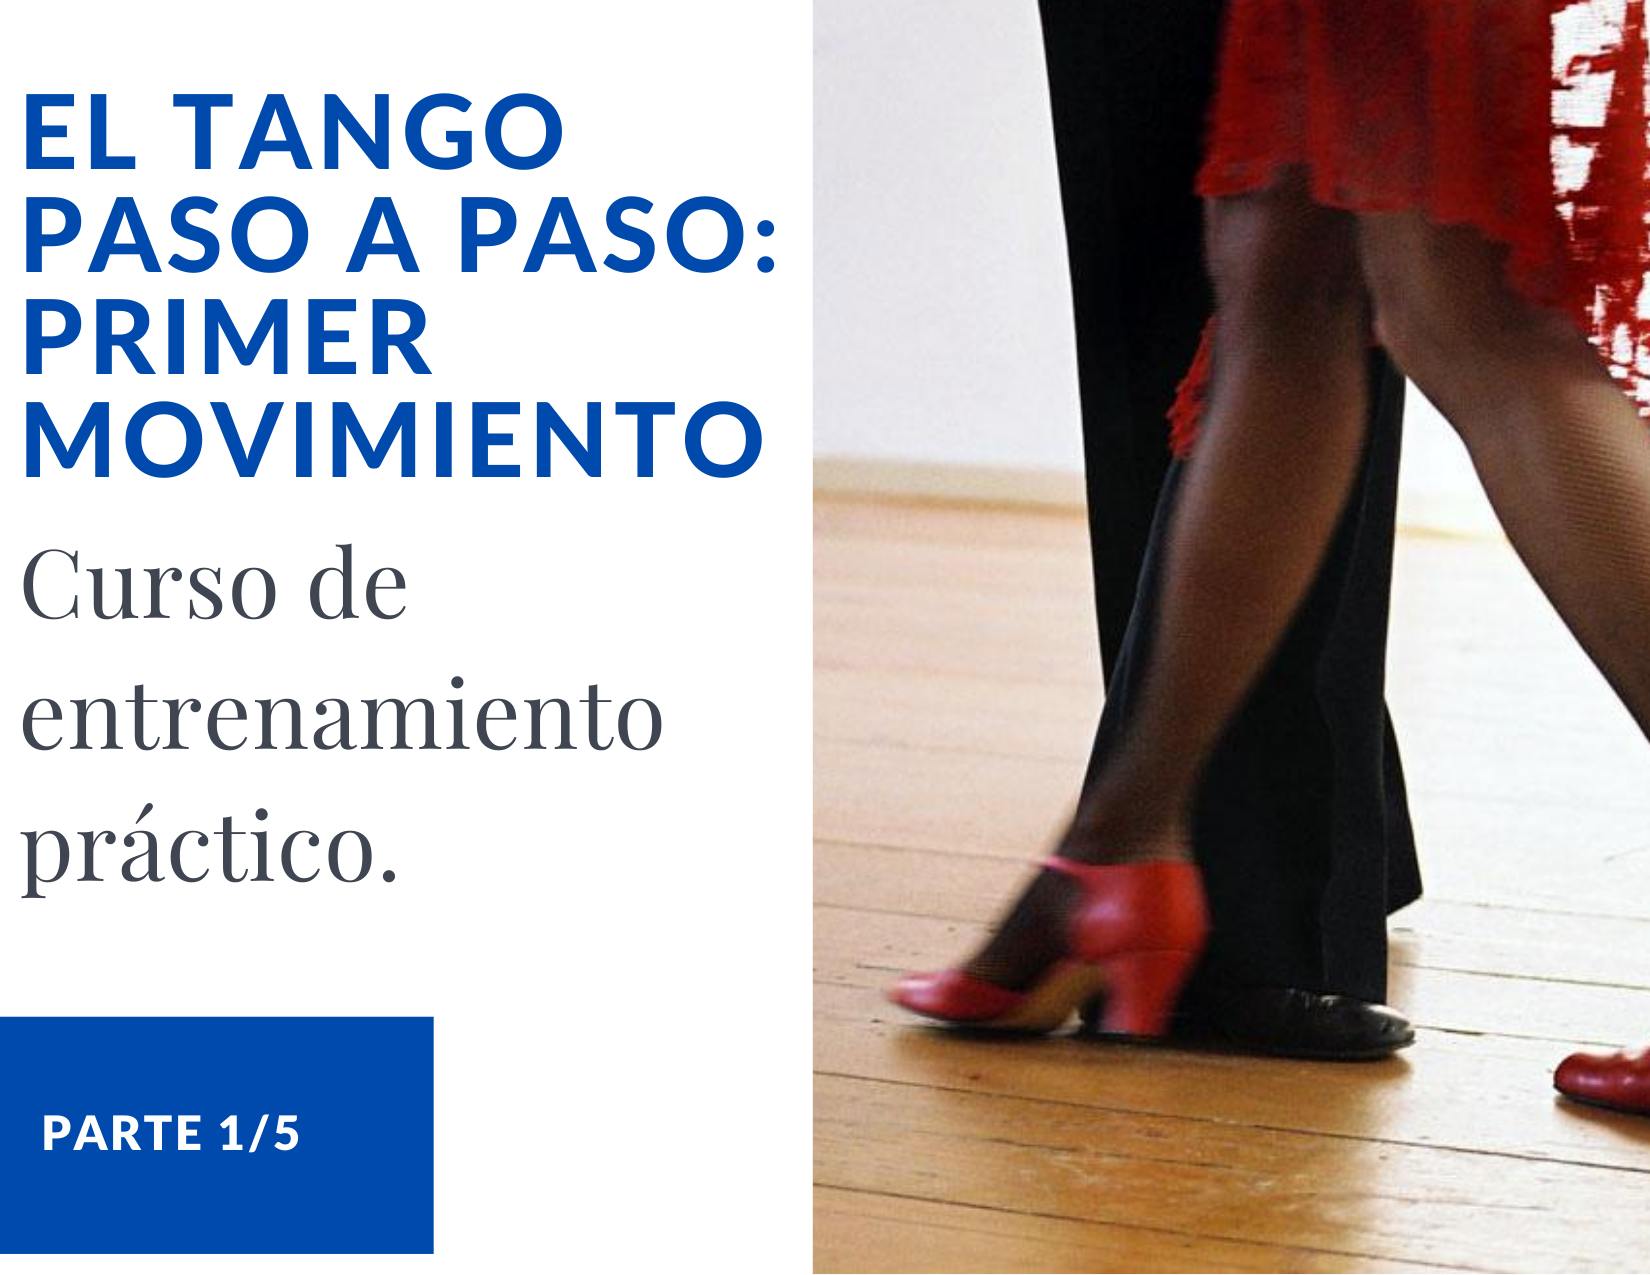 1) El tango paso a paso: Primer Movimiento (1/5)